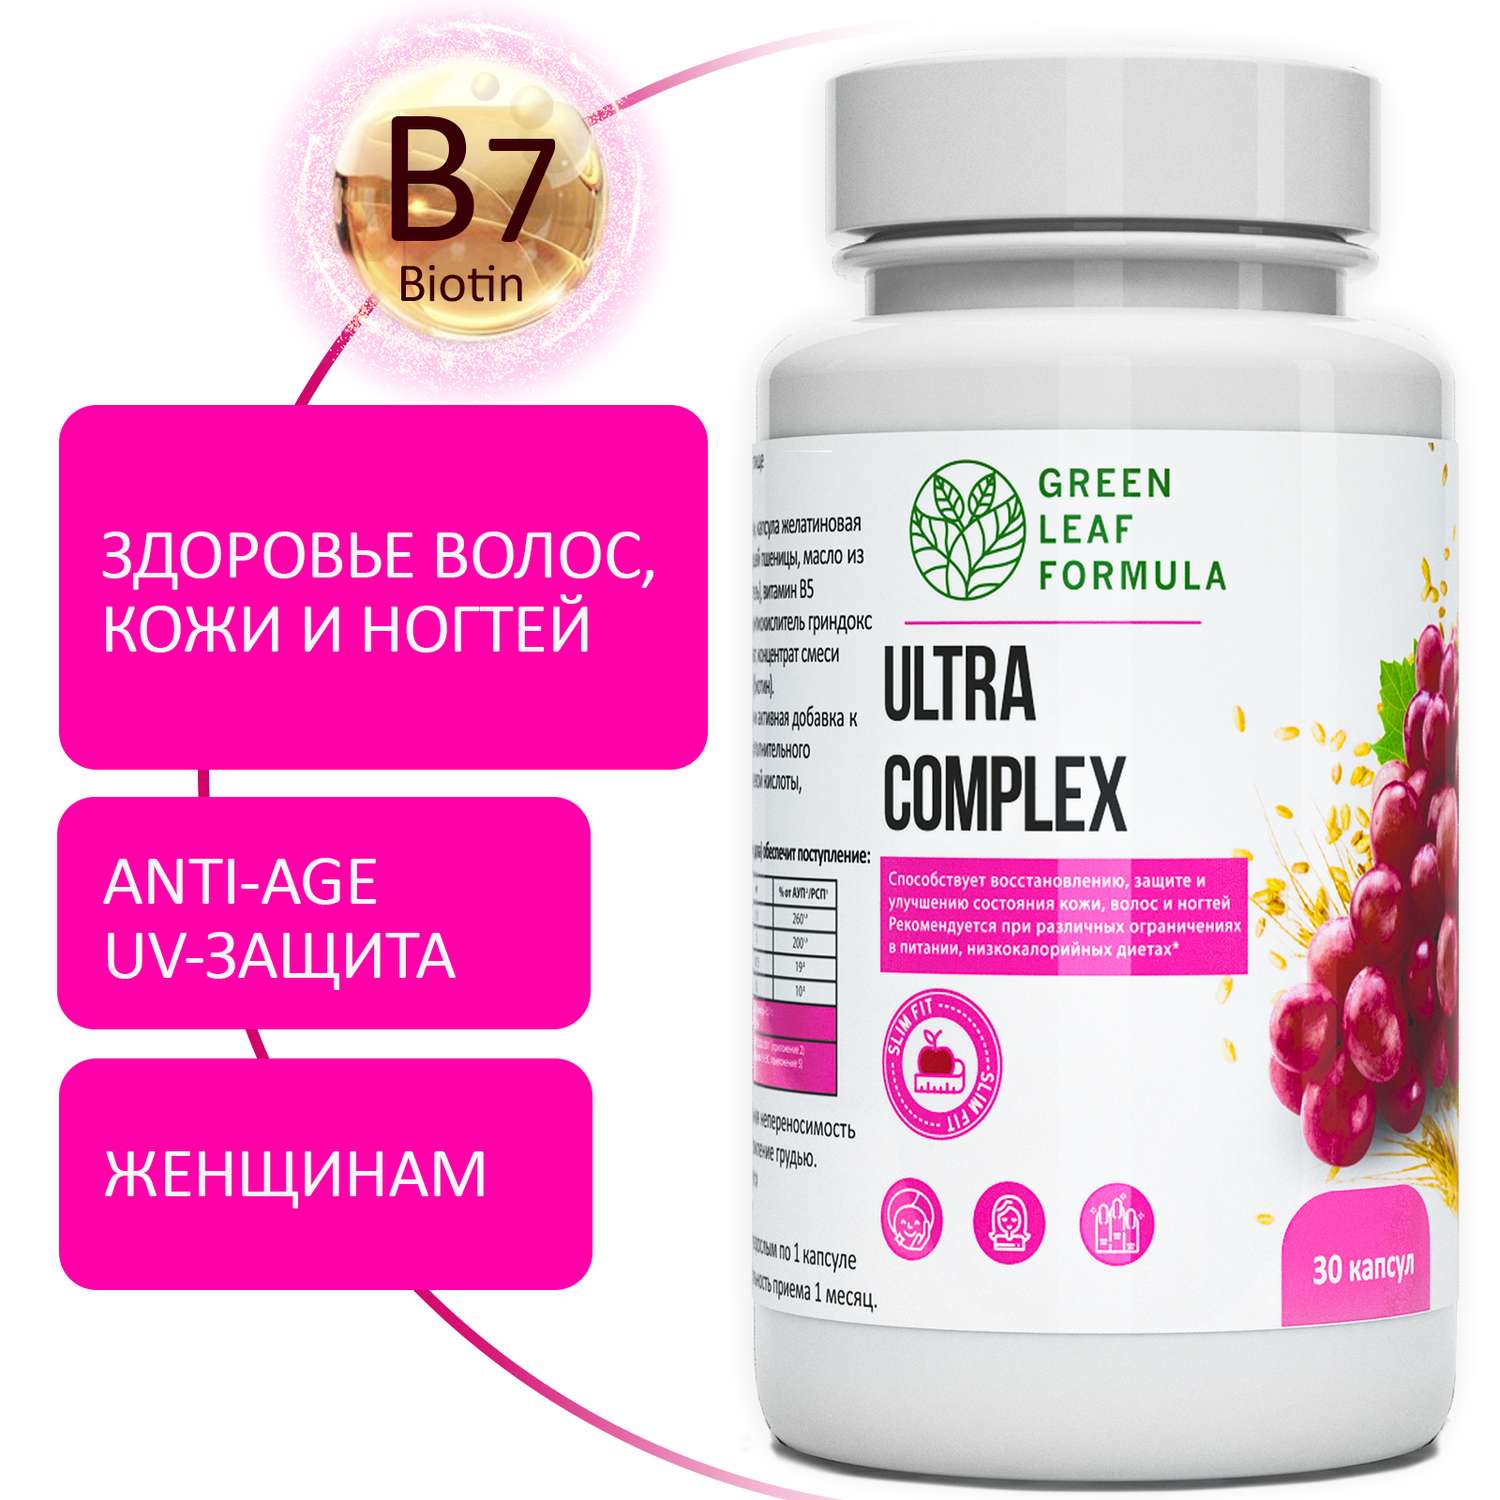 Комплекс витаминов для женщин Green Leaf Formula биотин витамины для кожи волос ногтей 2 банки по 30 капсул - фото 2